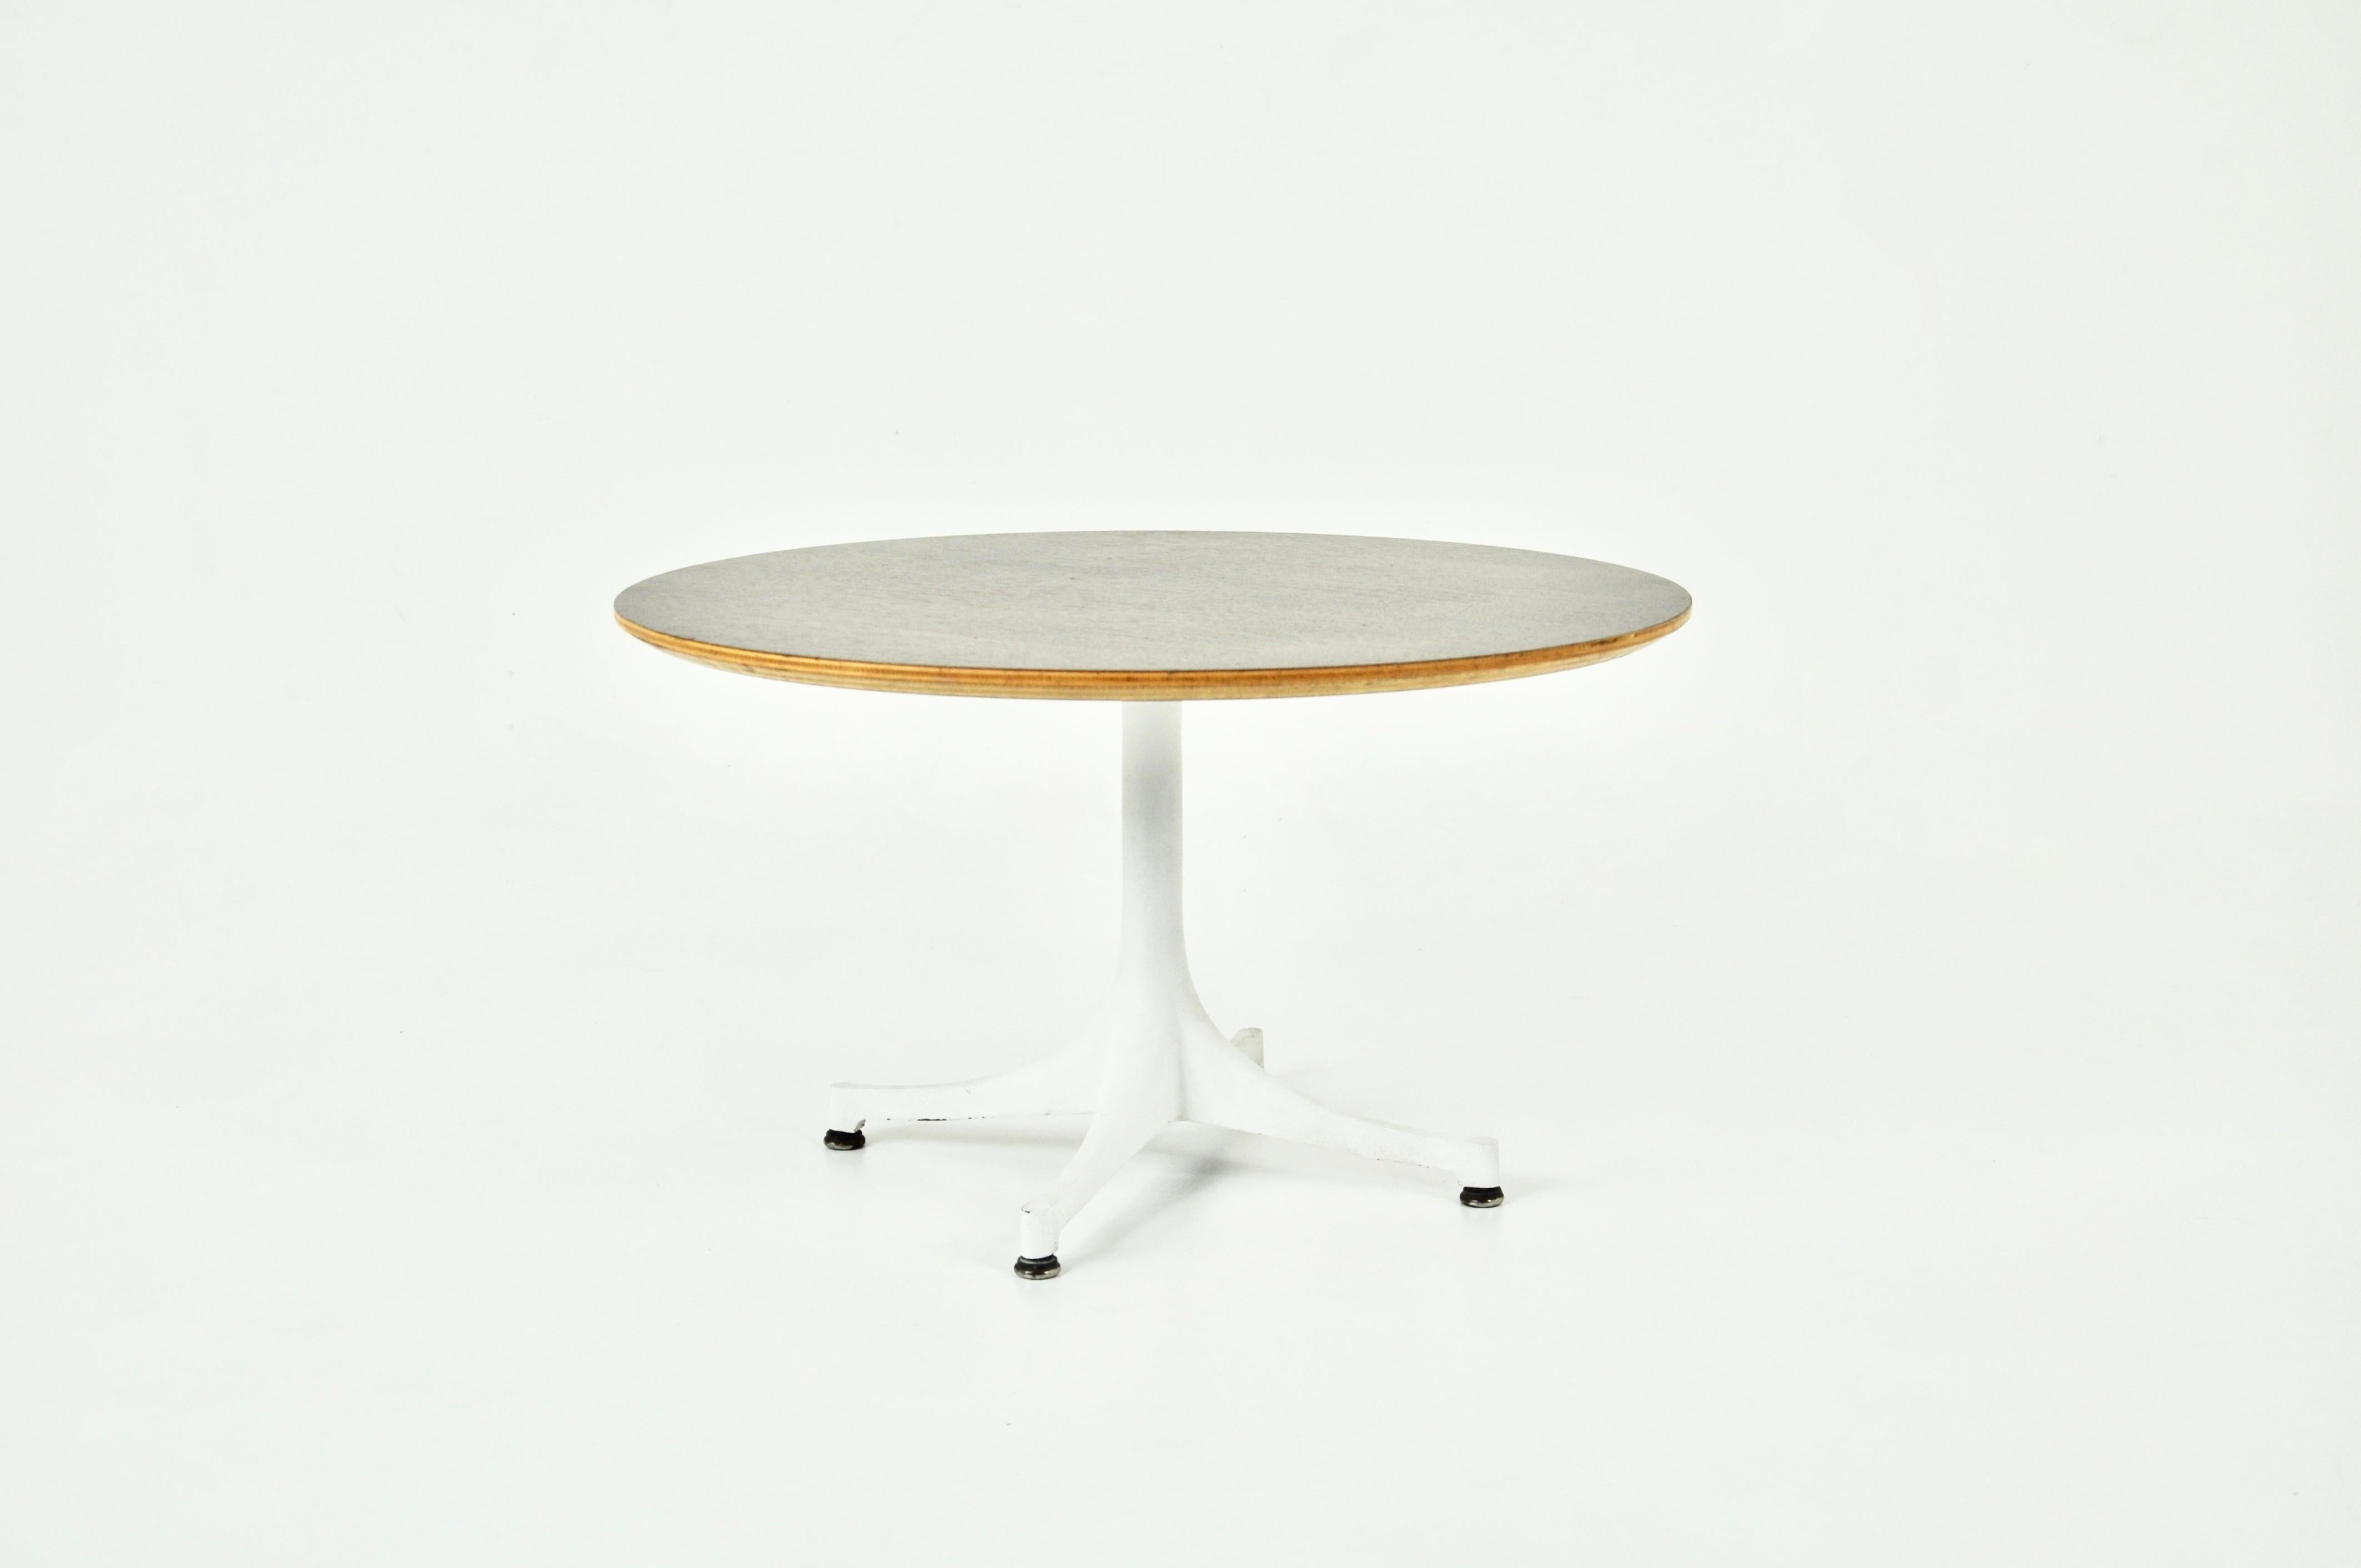 Tisch mit  Holzplatte und Metallgestell, entworfen von George Nelson und hergestellt von Herman Miller in den 1960er Jahren. Abnutzung durch die Zeit und das Alter des Tisches